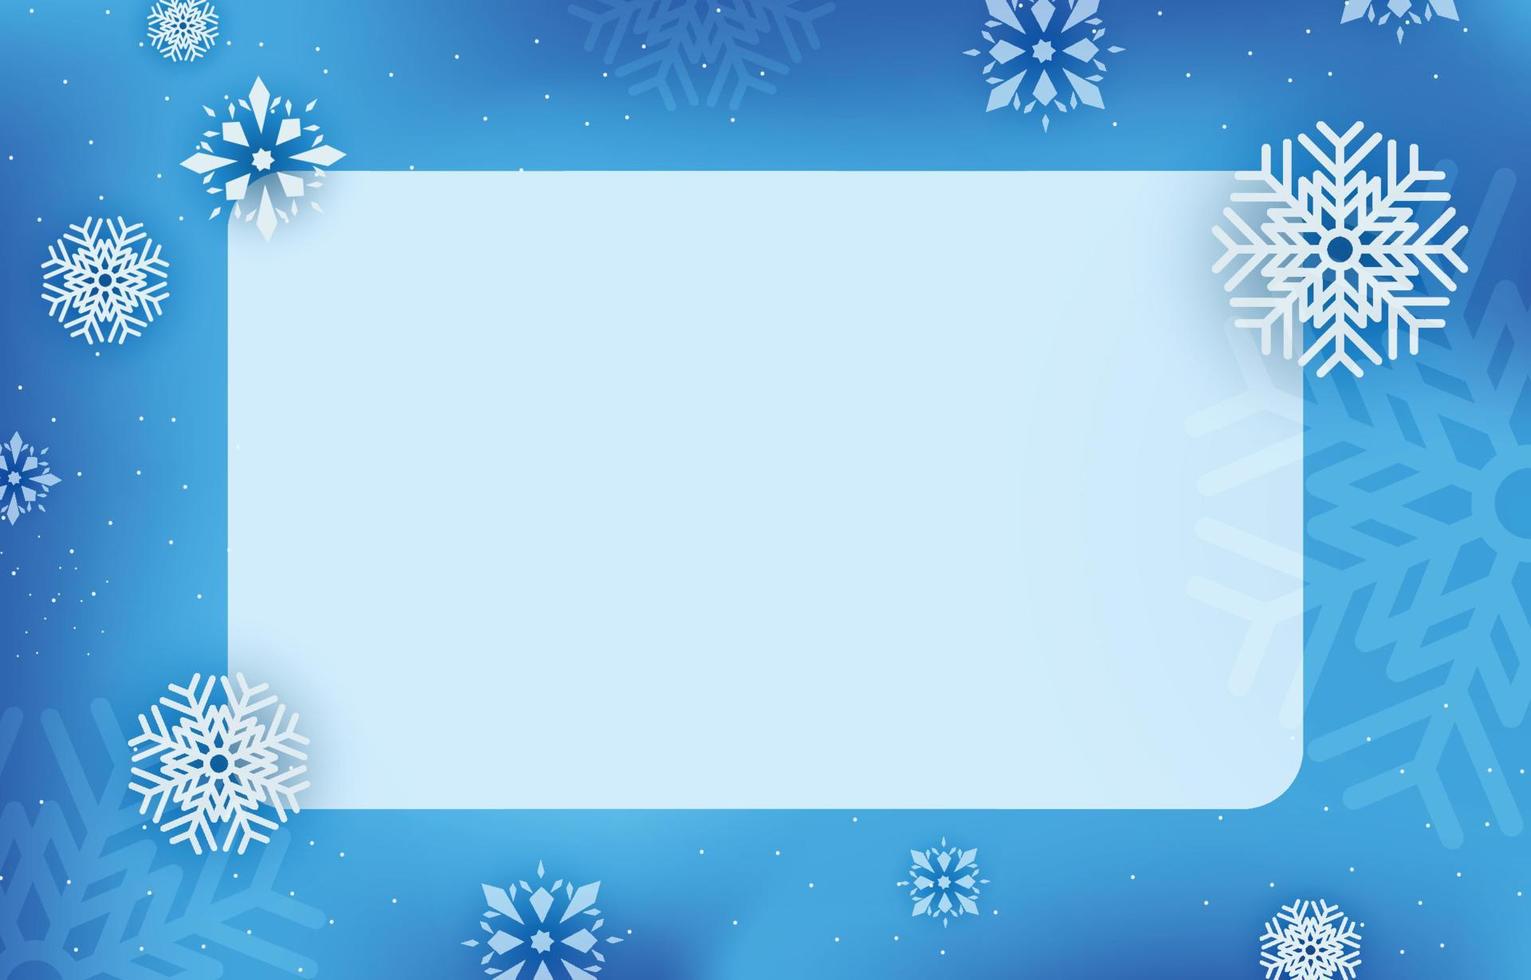 etiqueta cuadrada en blanco azul claro decorada con copos de nieve, ilustración vectorial de invierno, navidad y año nuevo. vector